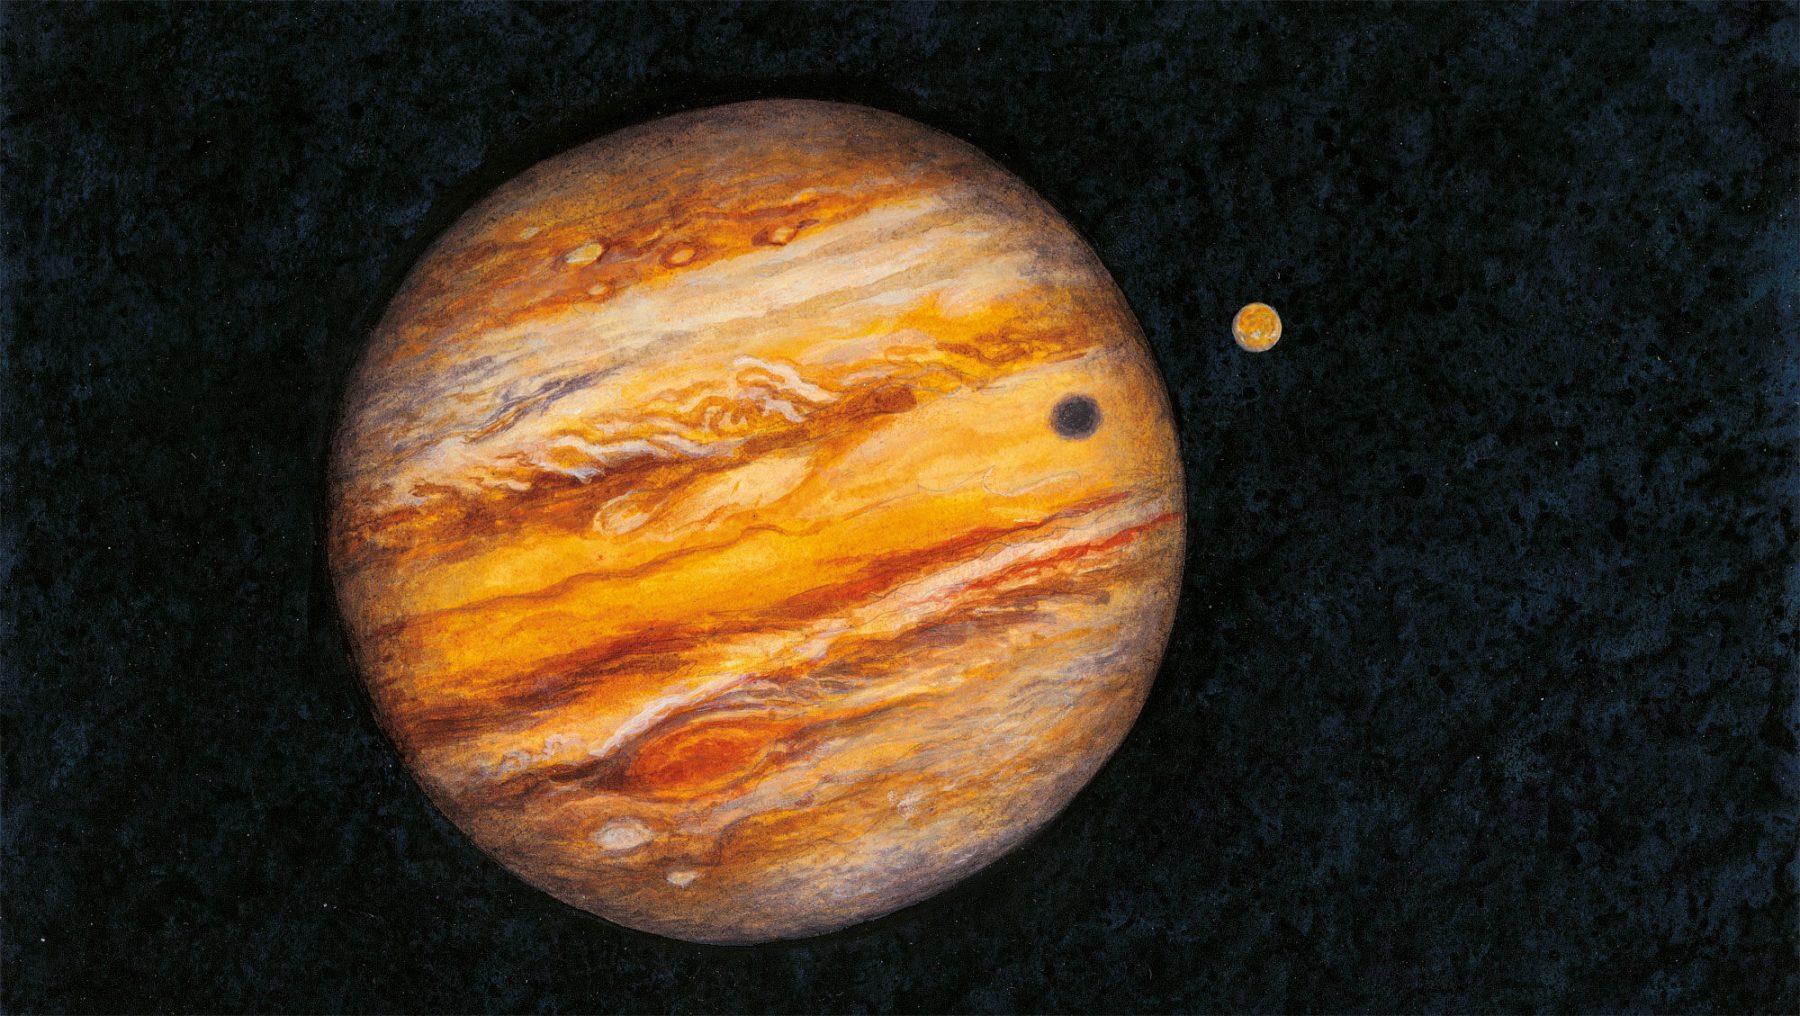 Comment observer les planètes du système solaire ? - La Salamandre